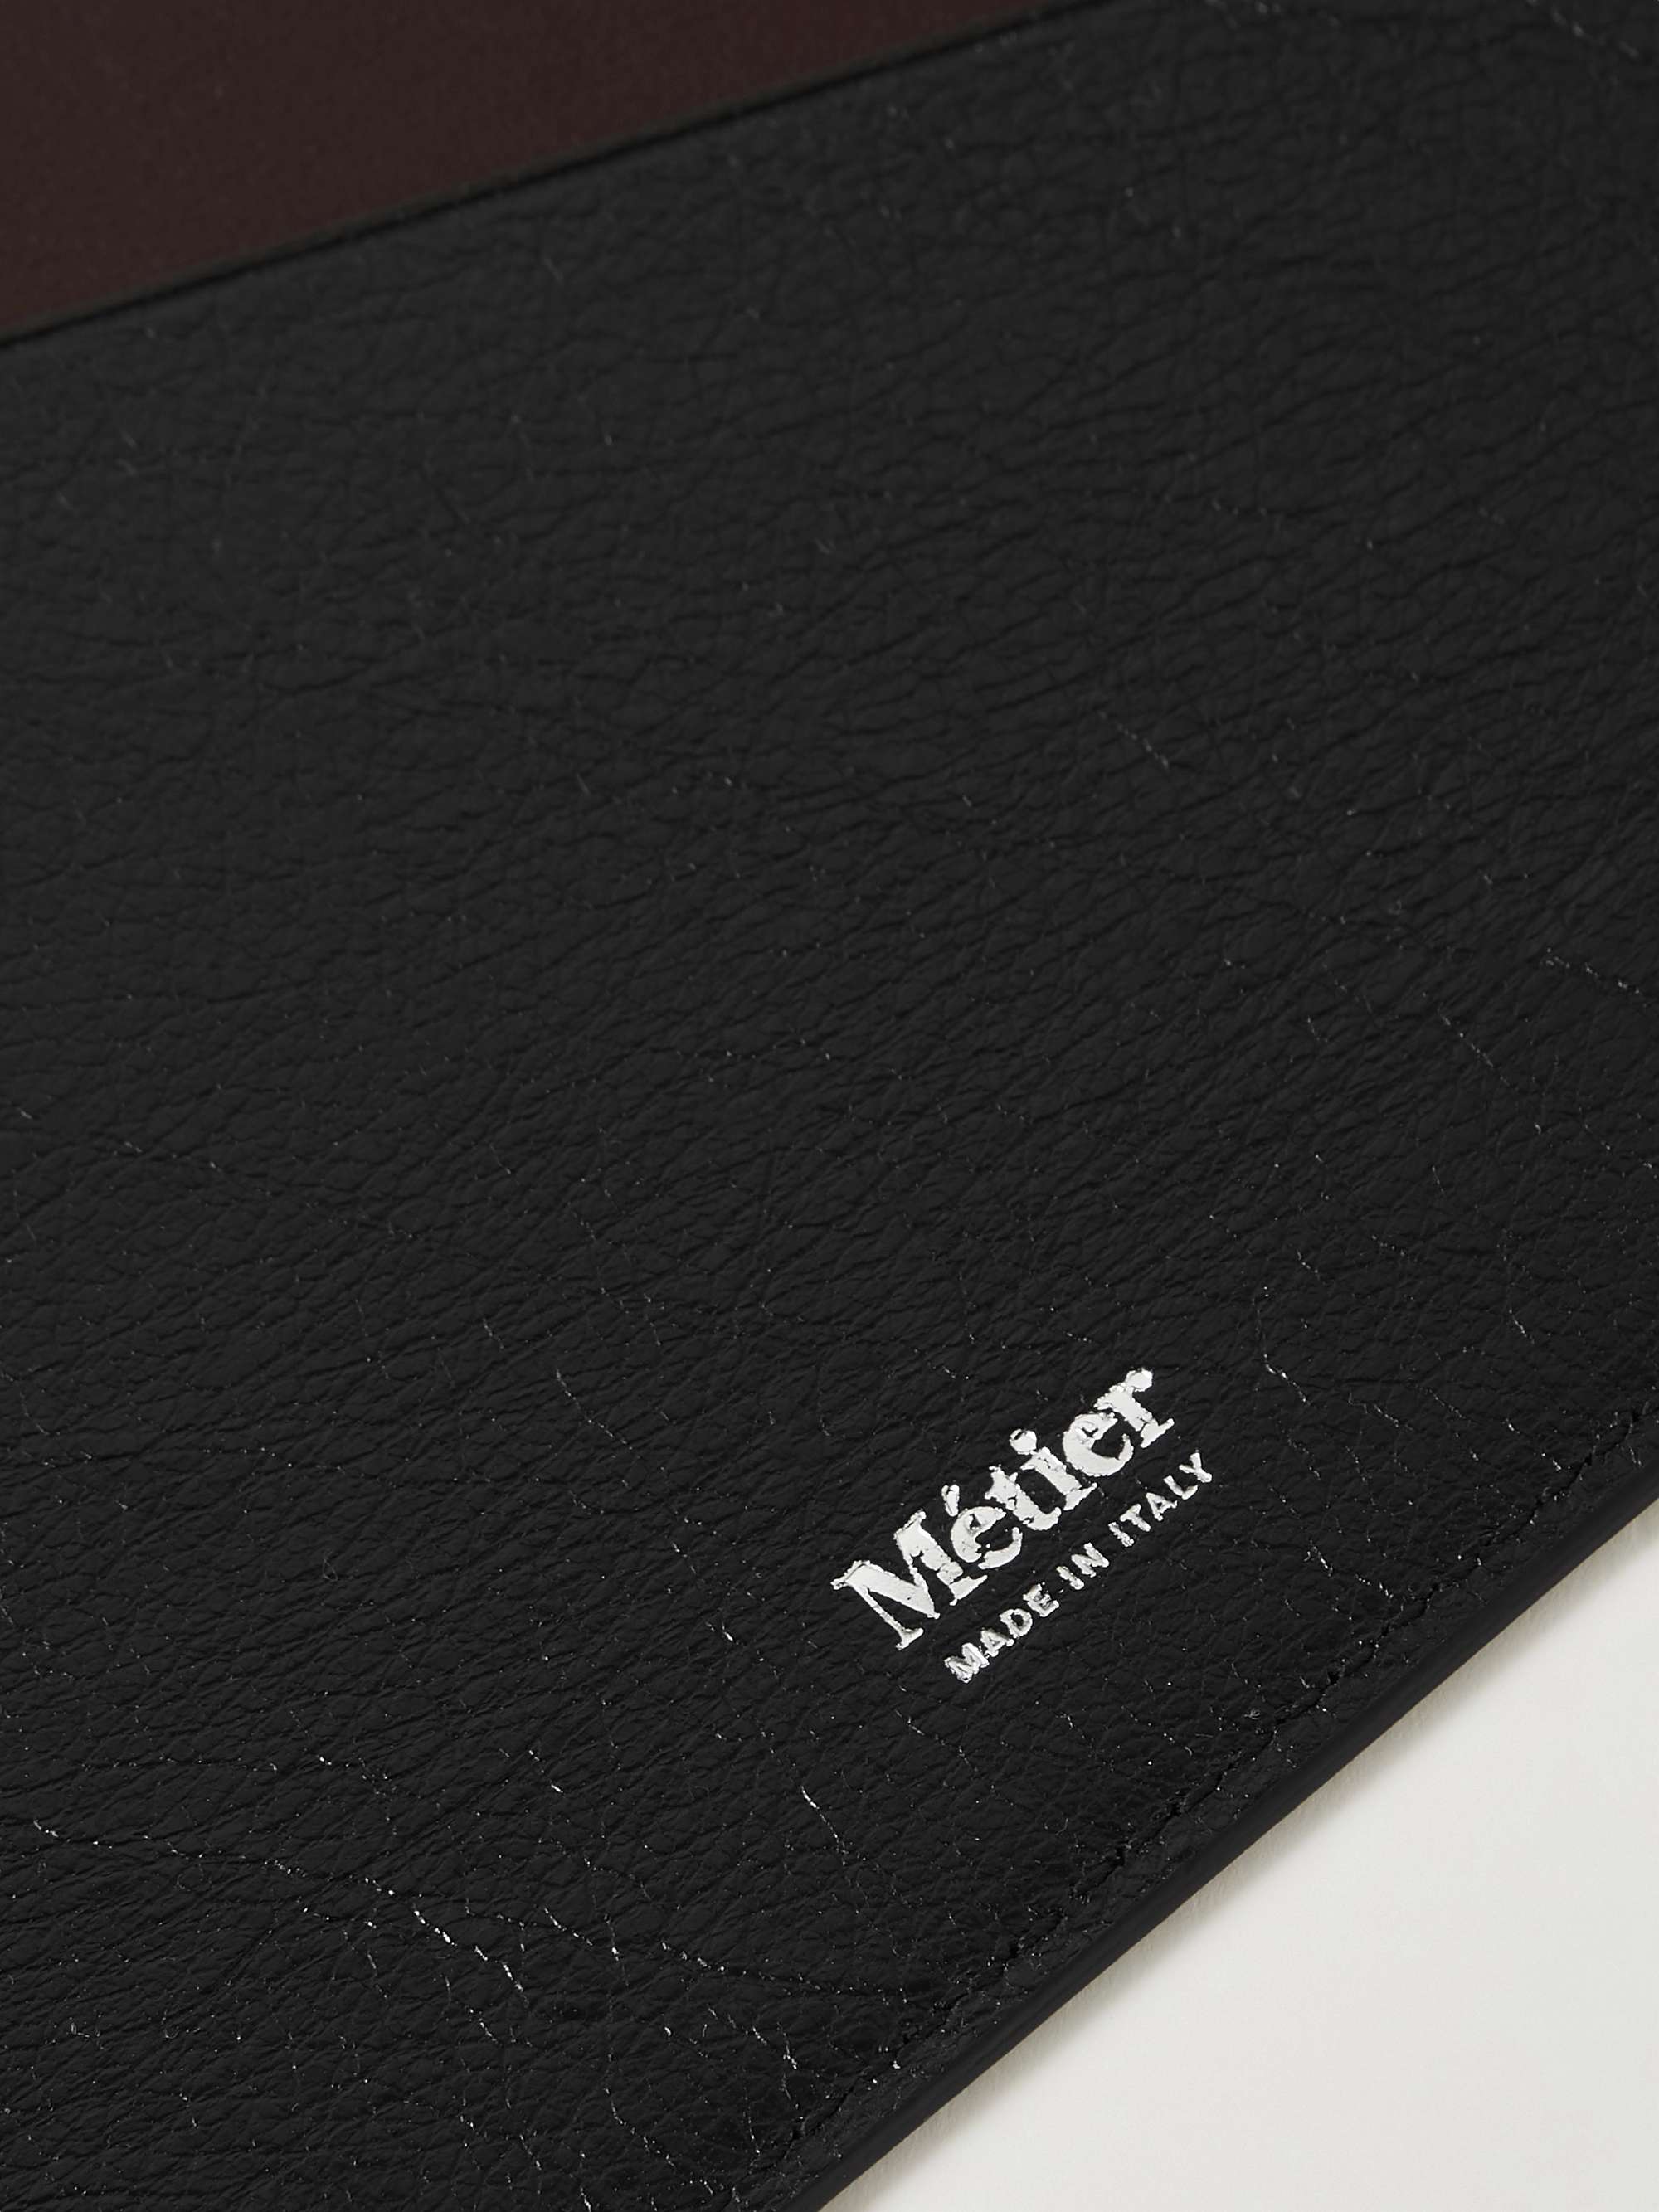 MÉTIER A4 Leather Folder